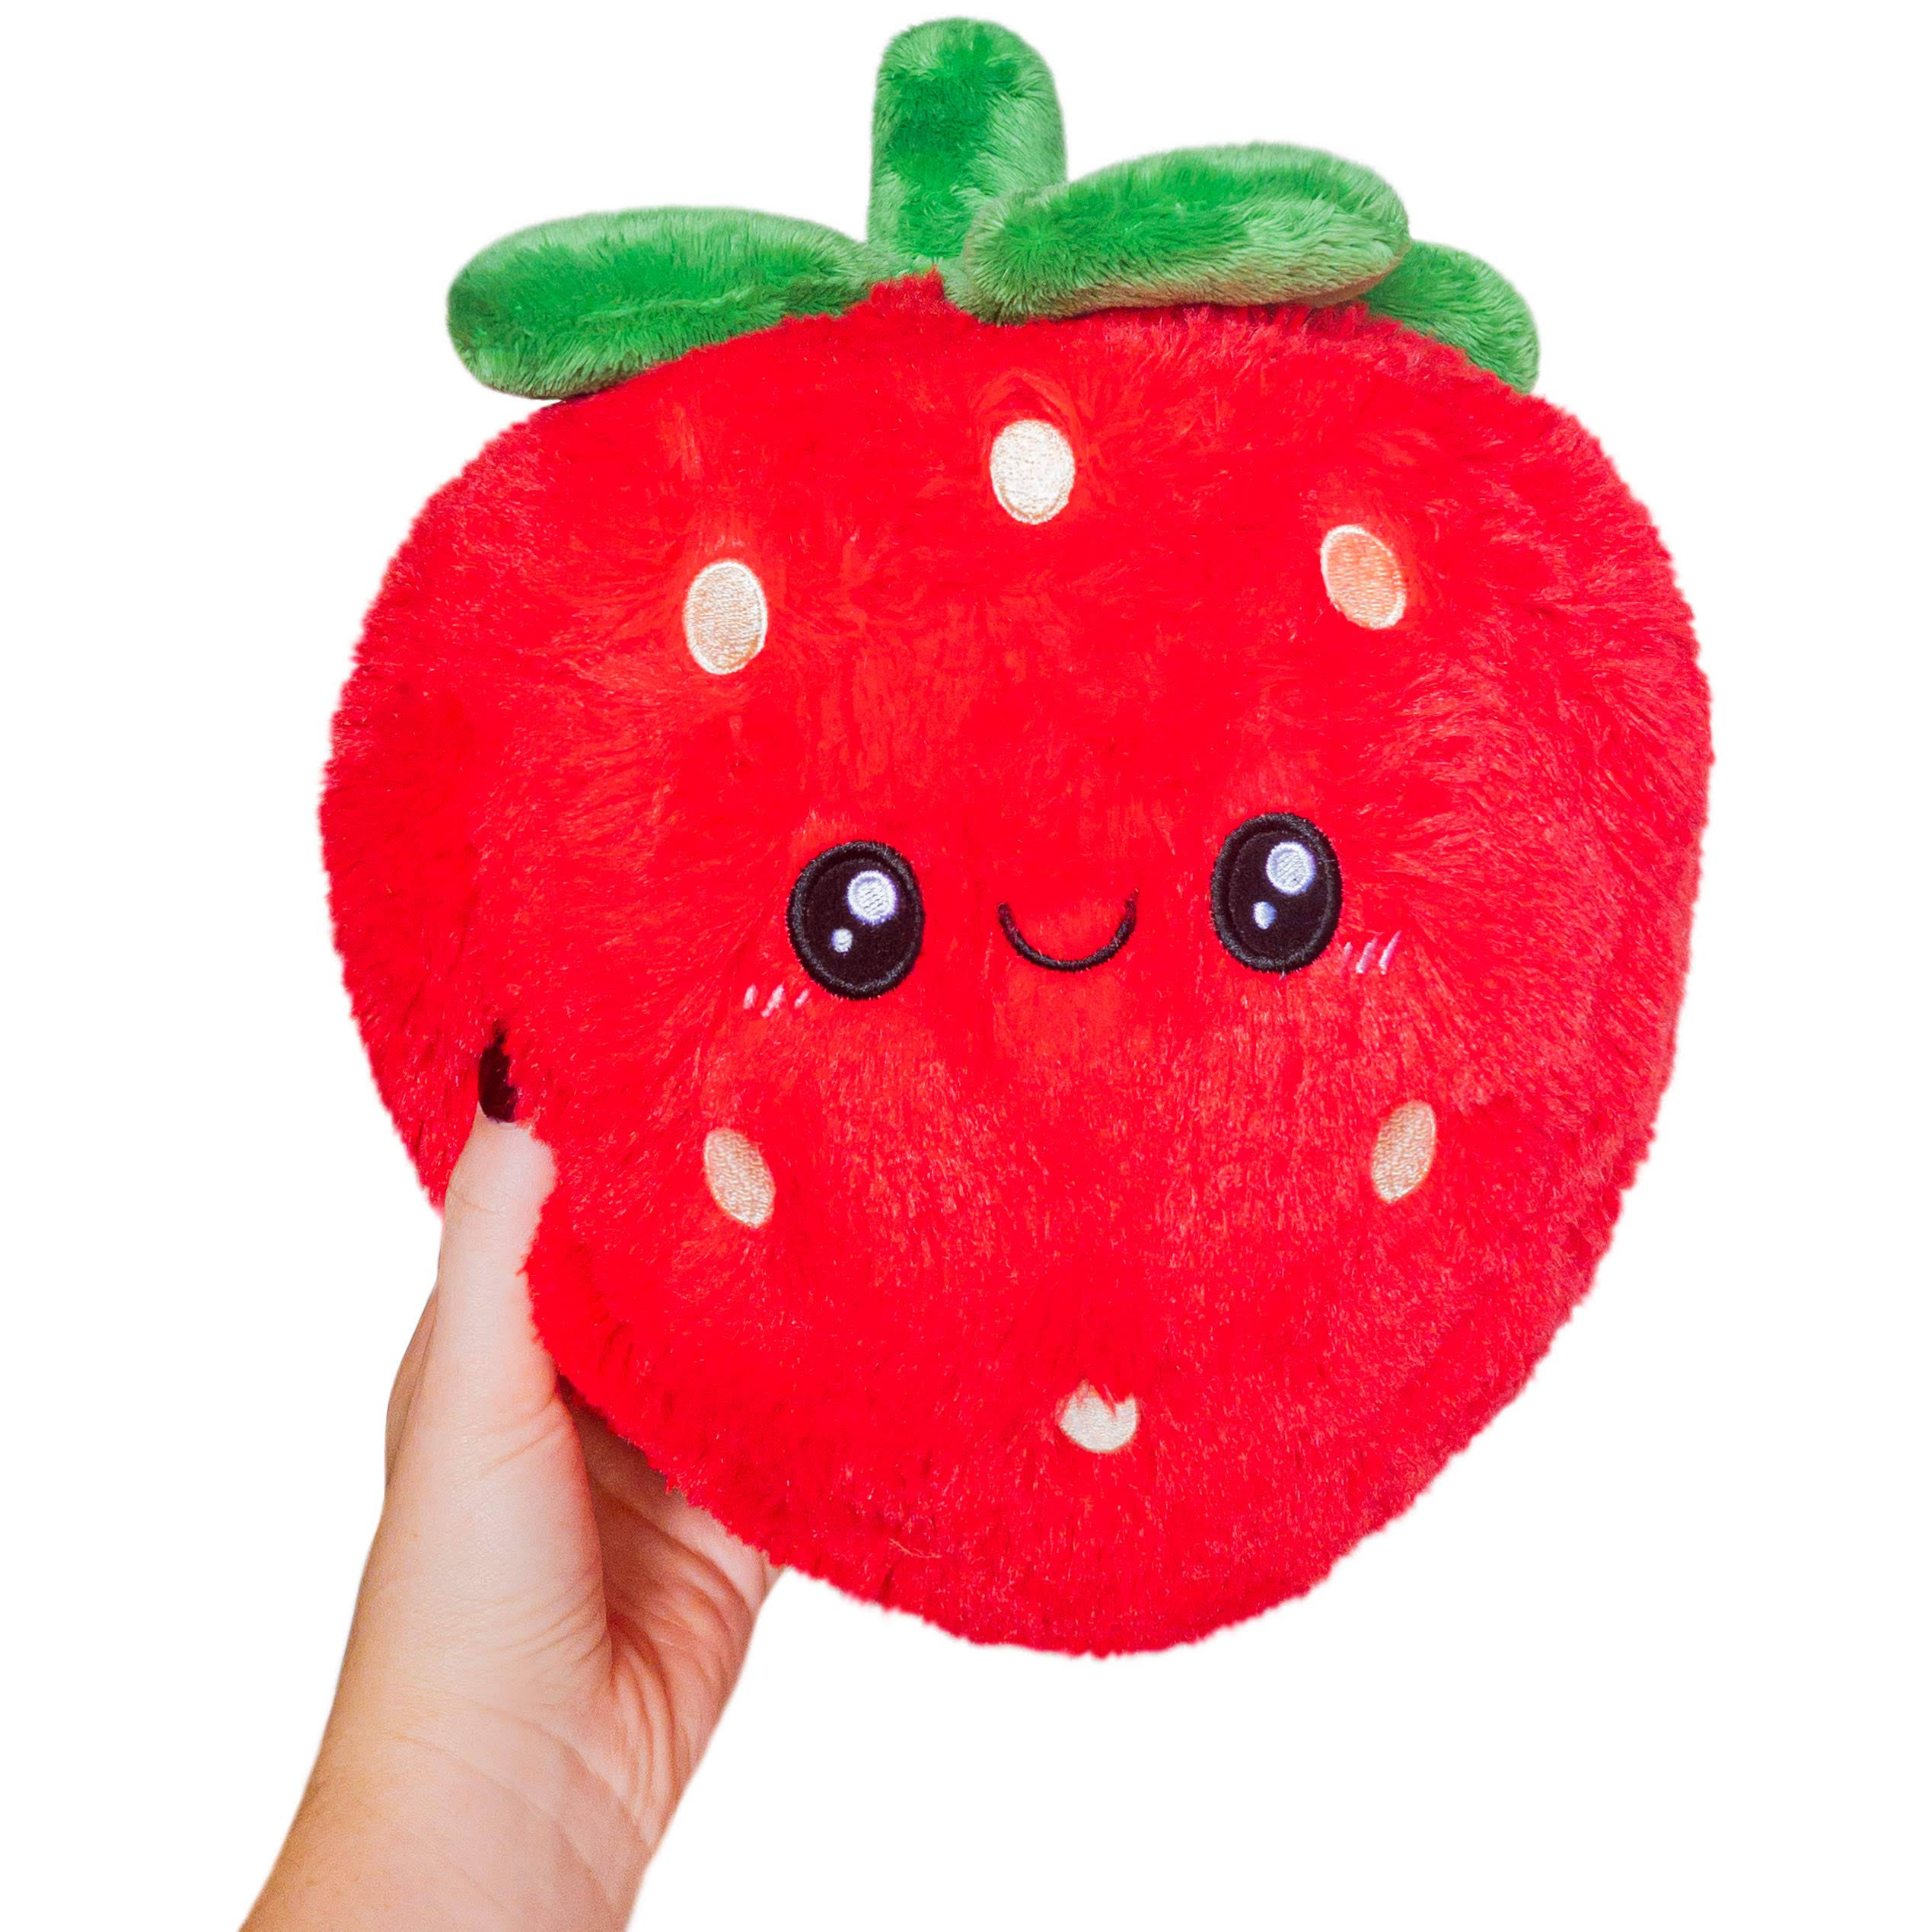 Squishable Mini Comfort Food Strawberry 7"